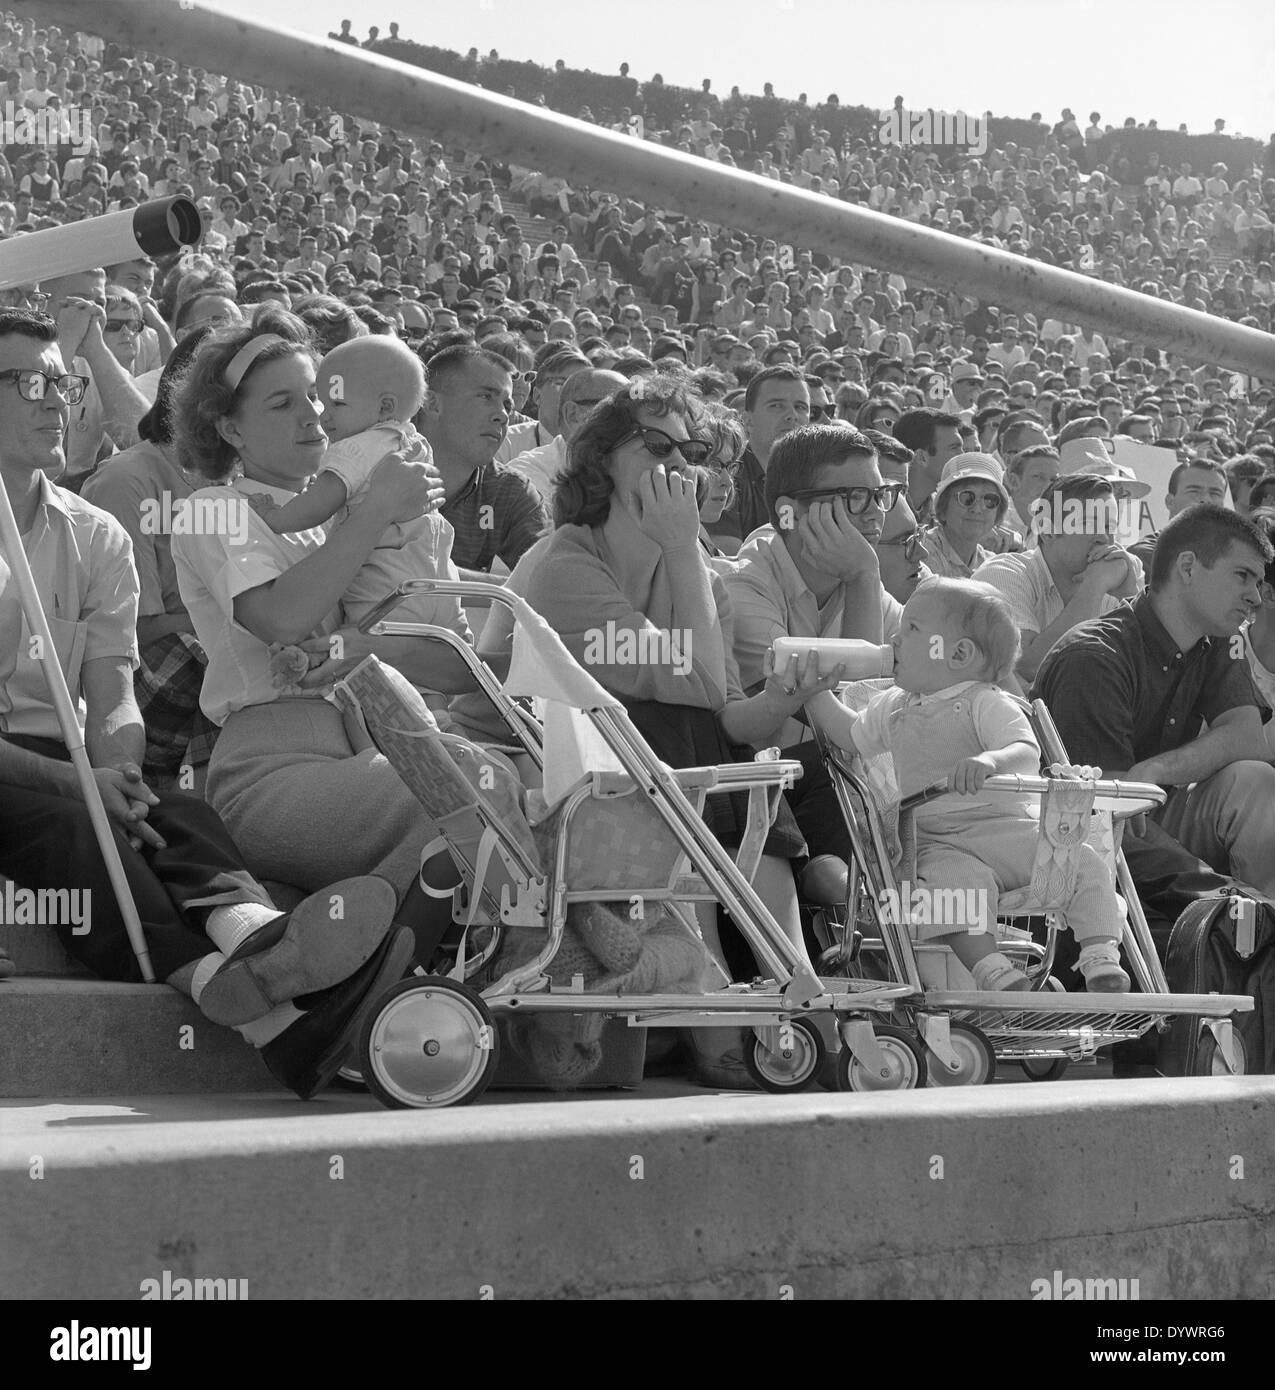 Foule (avec les mères et les bébés) lors d'un rassemblement politique pour le sénateur Barry Goldwater, San Diego, Californie, États-Unis au début des années 1960 Banque D'Images